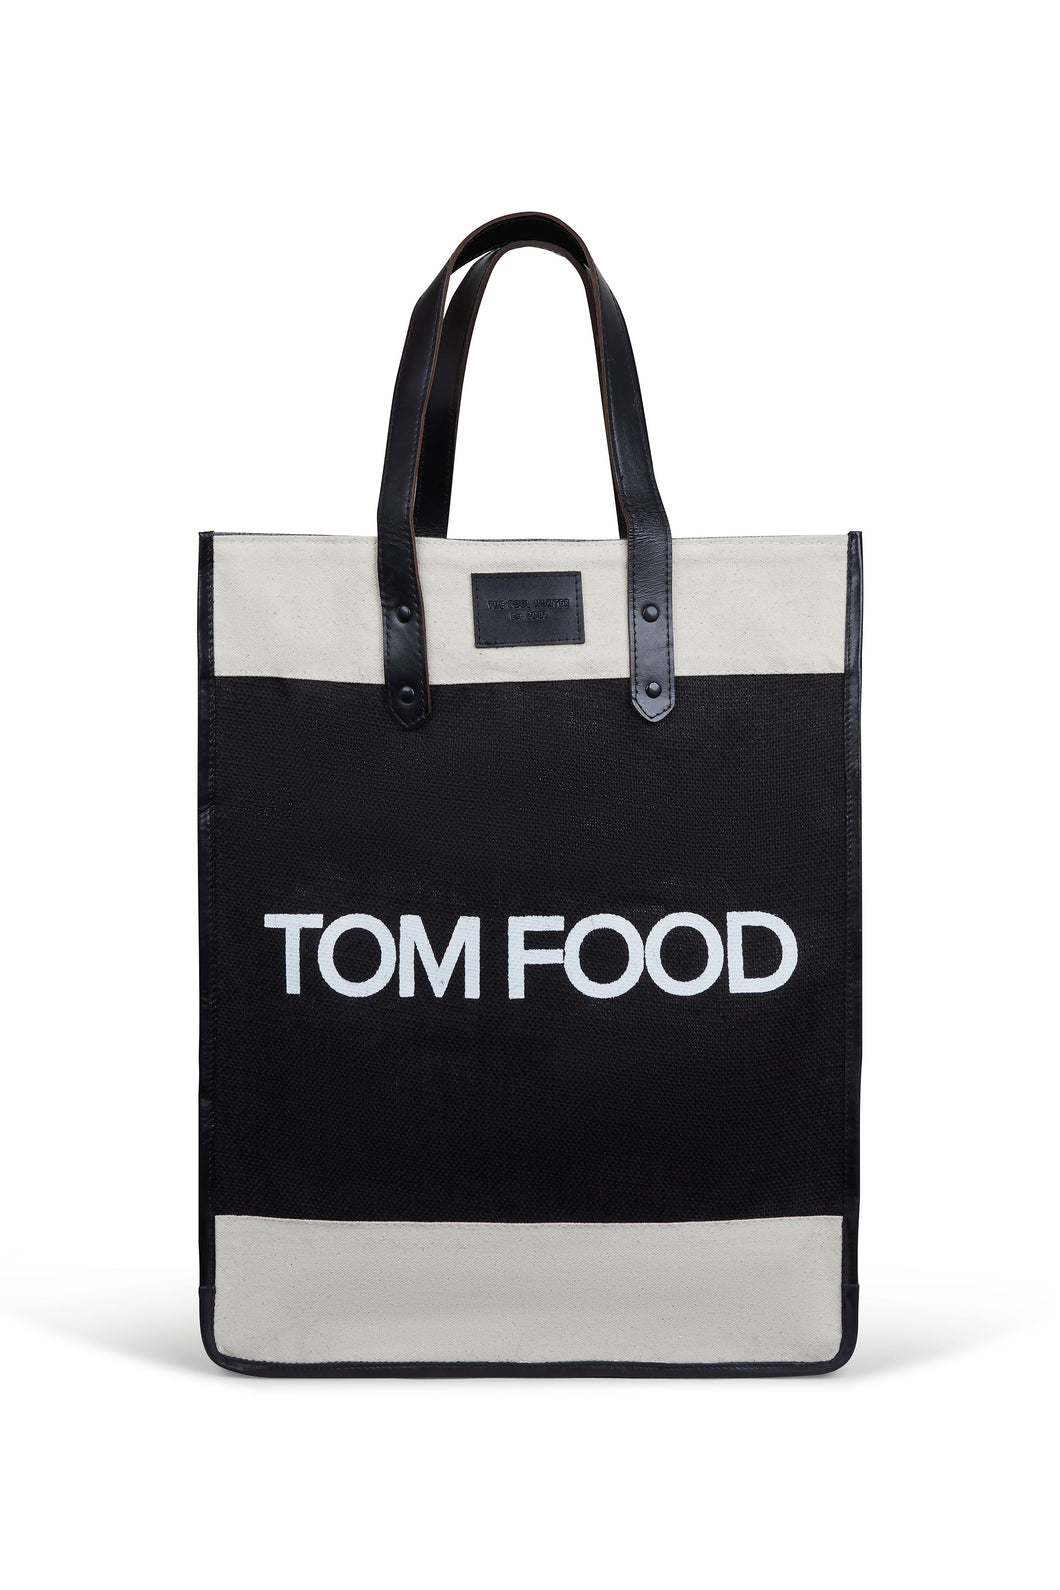 Market Bag - Tom Food